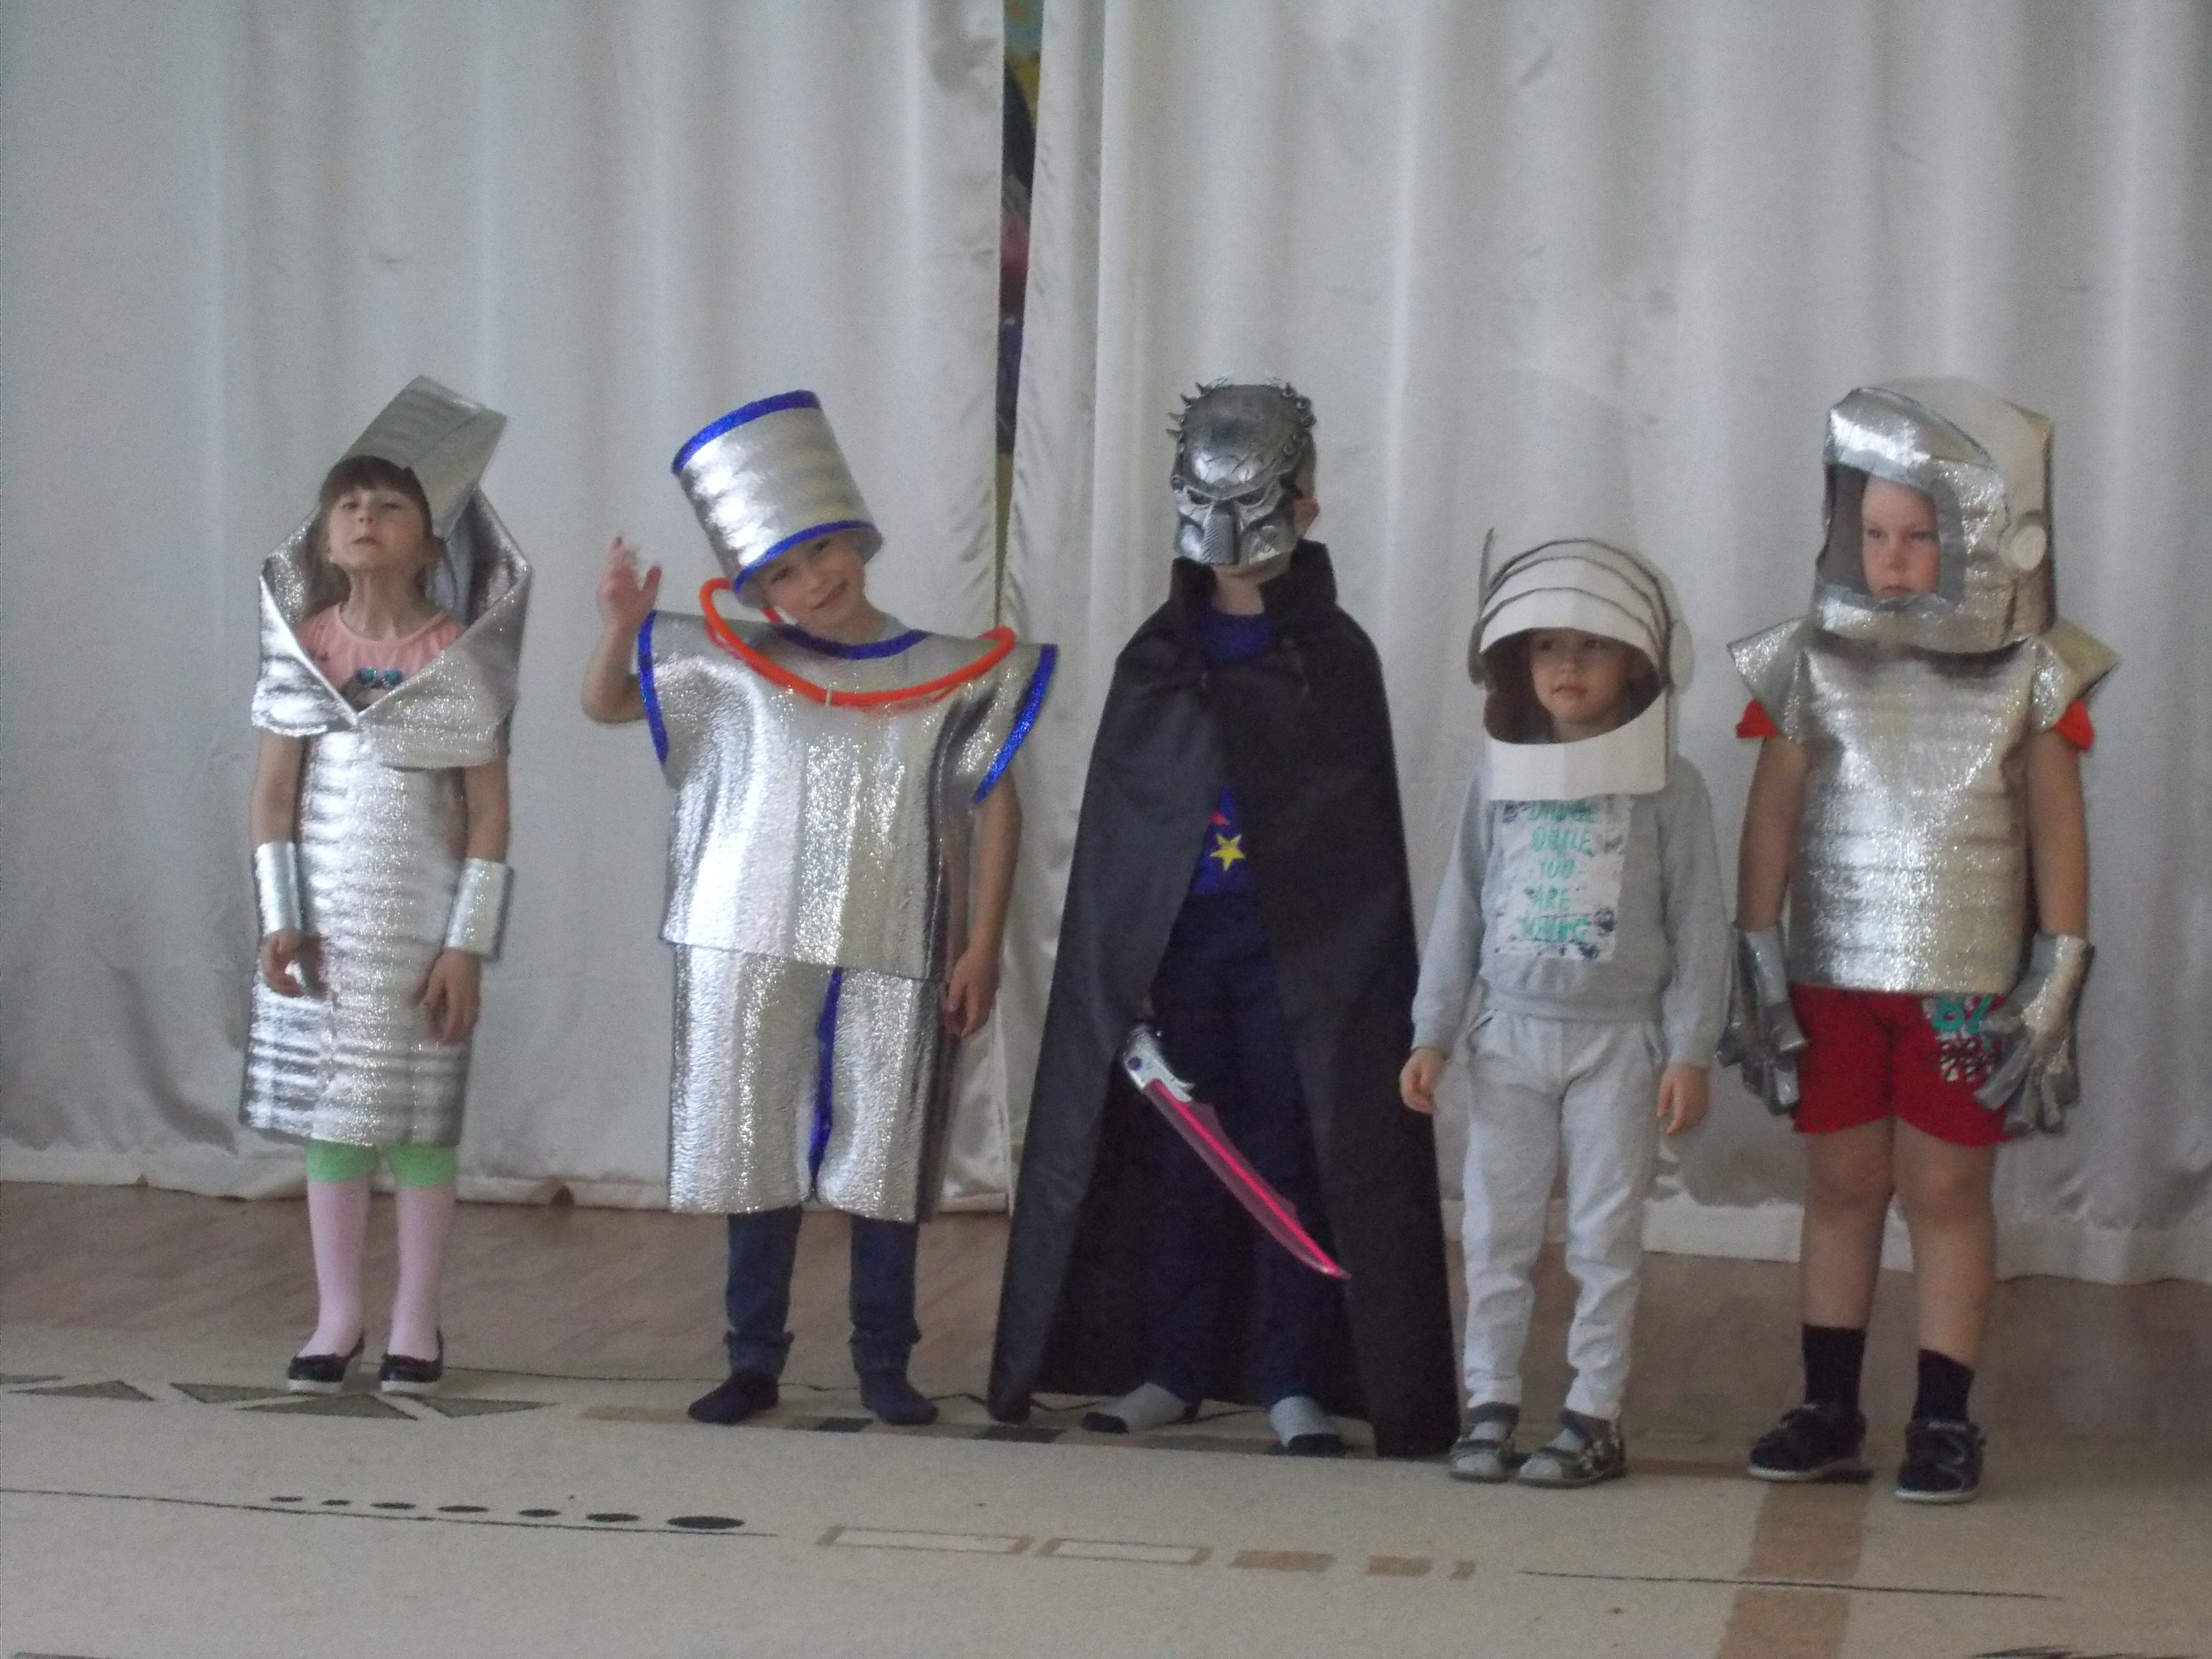 Костюм ко дню космонавтики в детский. Космический костюм в садик. Космические костюм для ребенка в детский сад. Космическийкомьюм в детский сад. Костюм ко Дню космонавтики в детский сад.